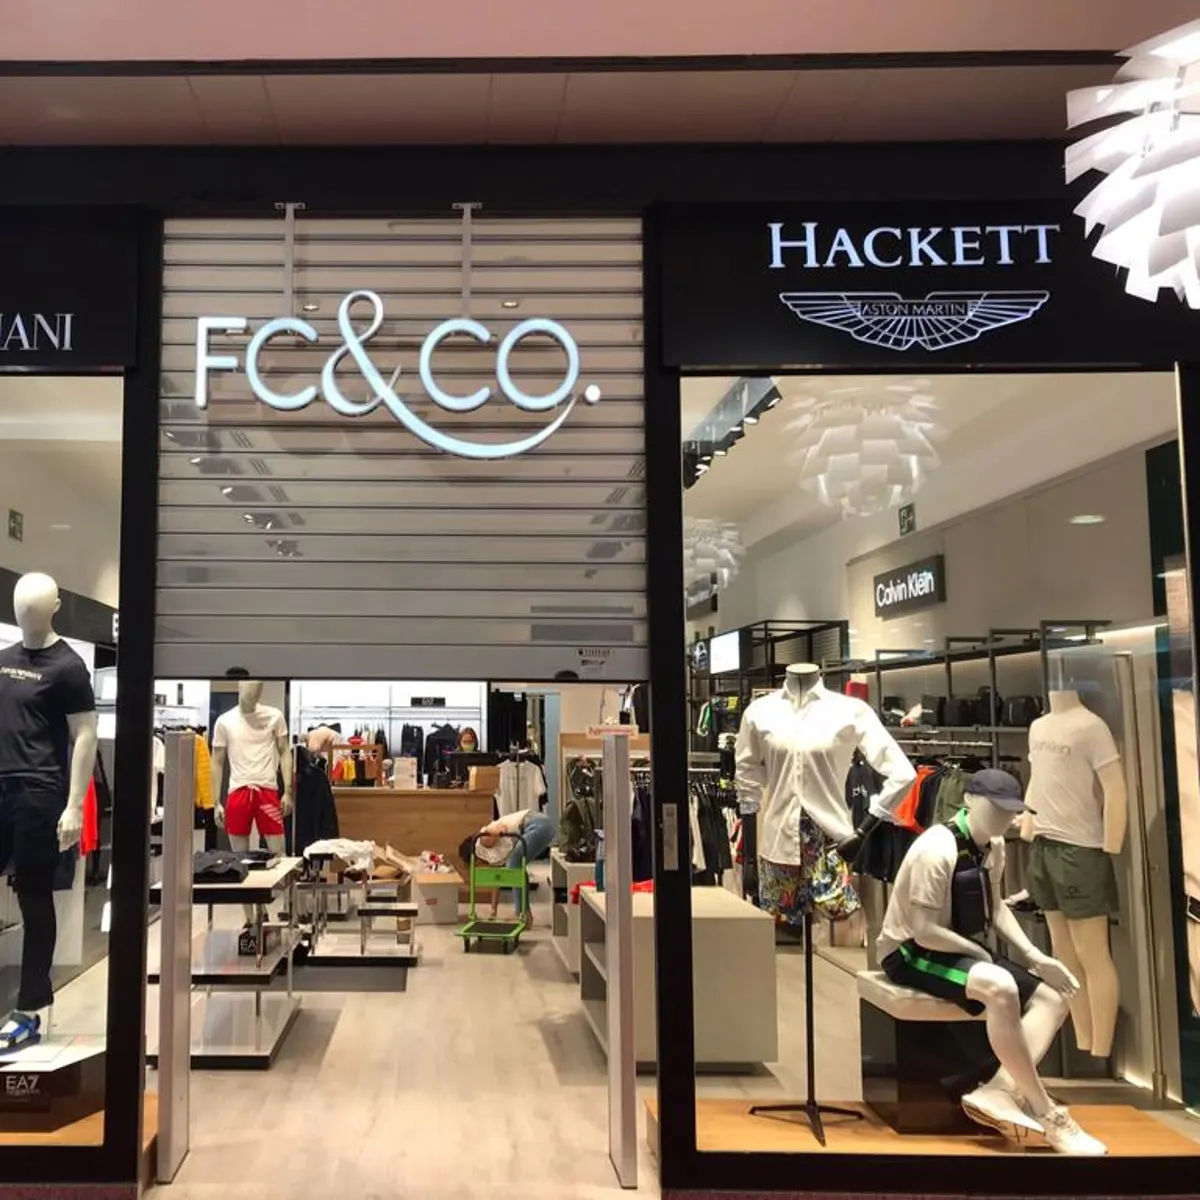 FC&CO abre nueva tienda La Cañada | Onda Radio